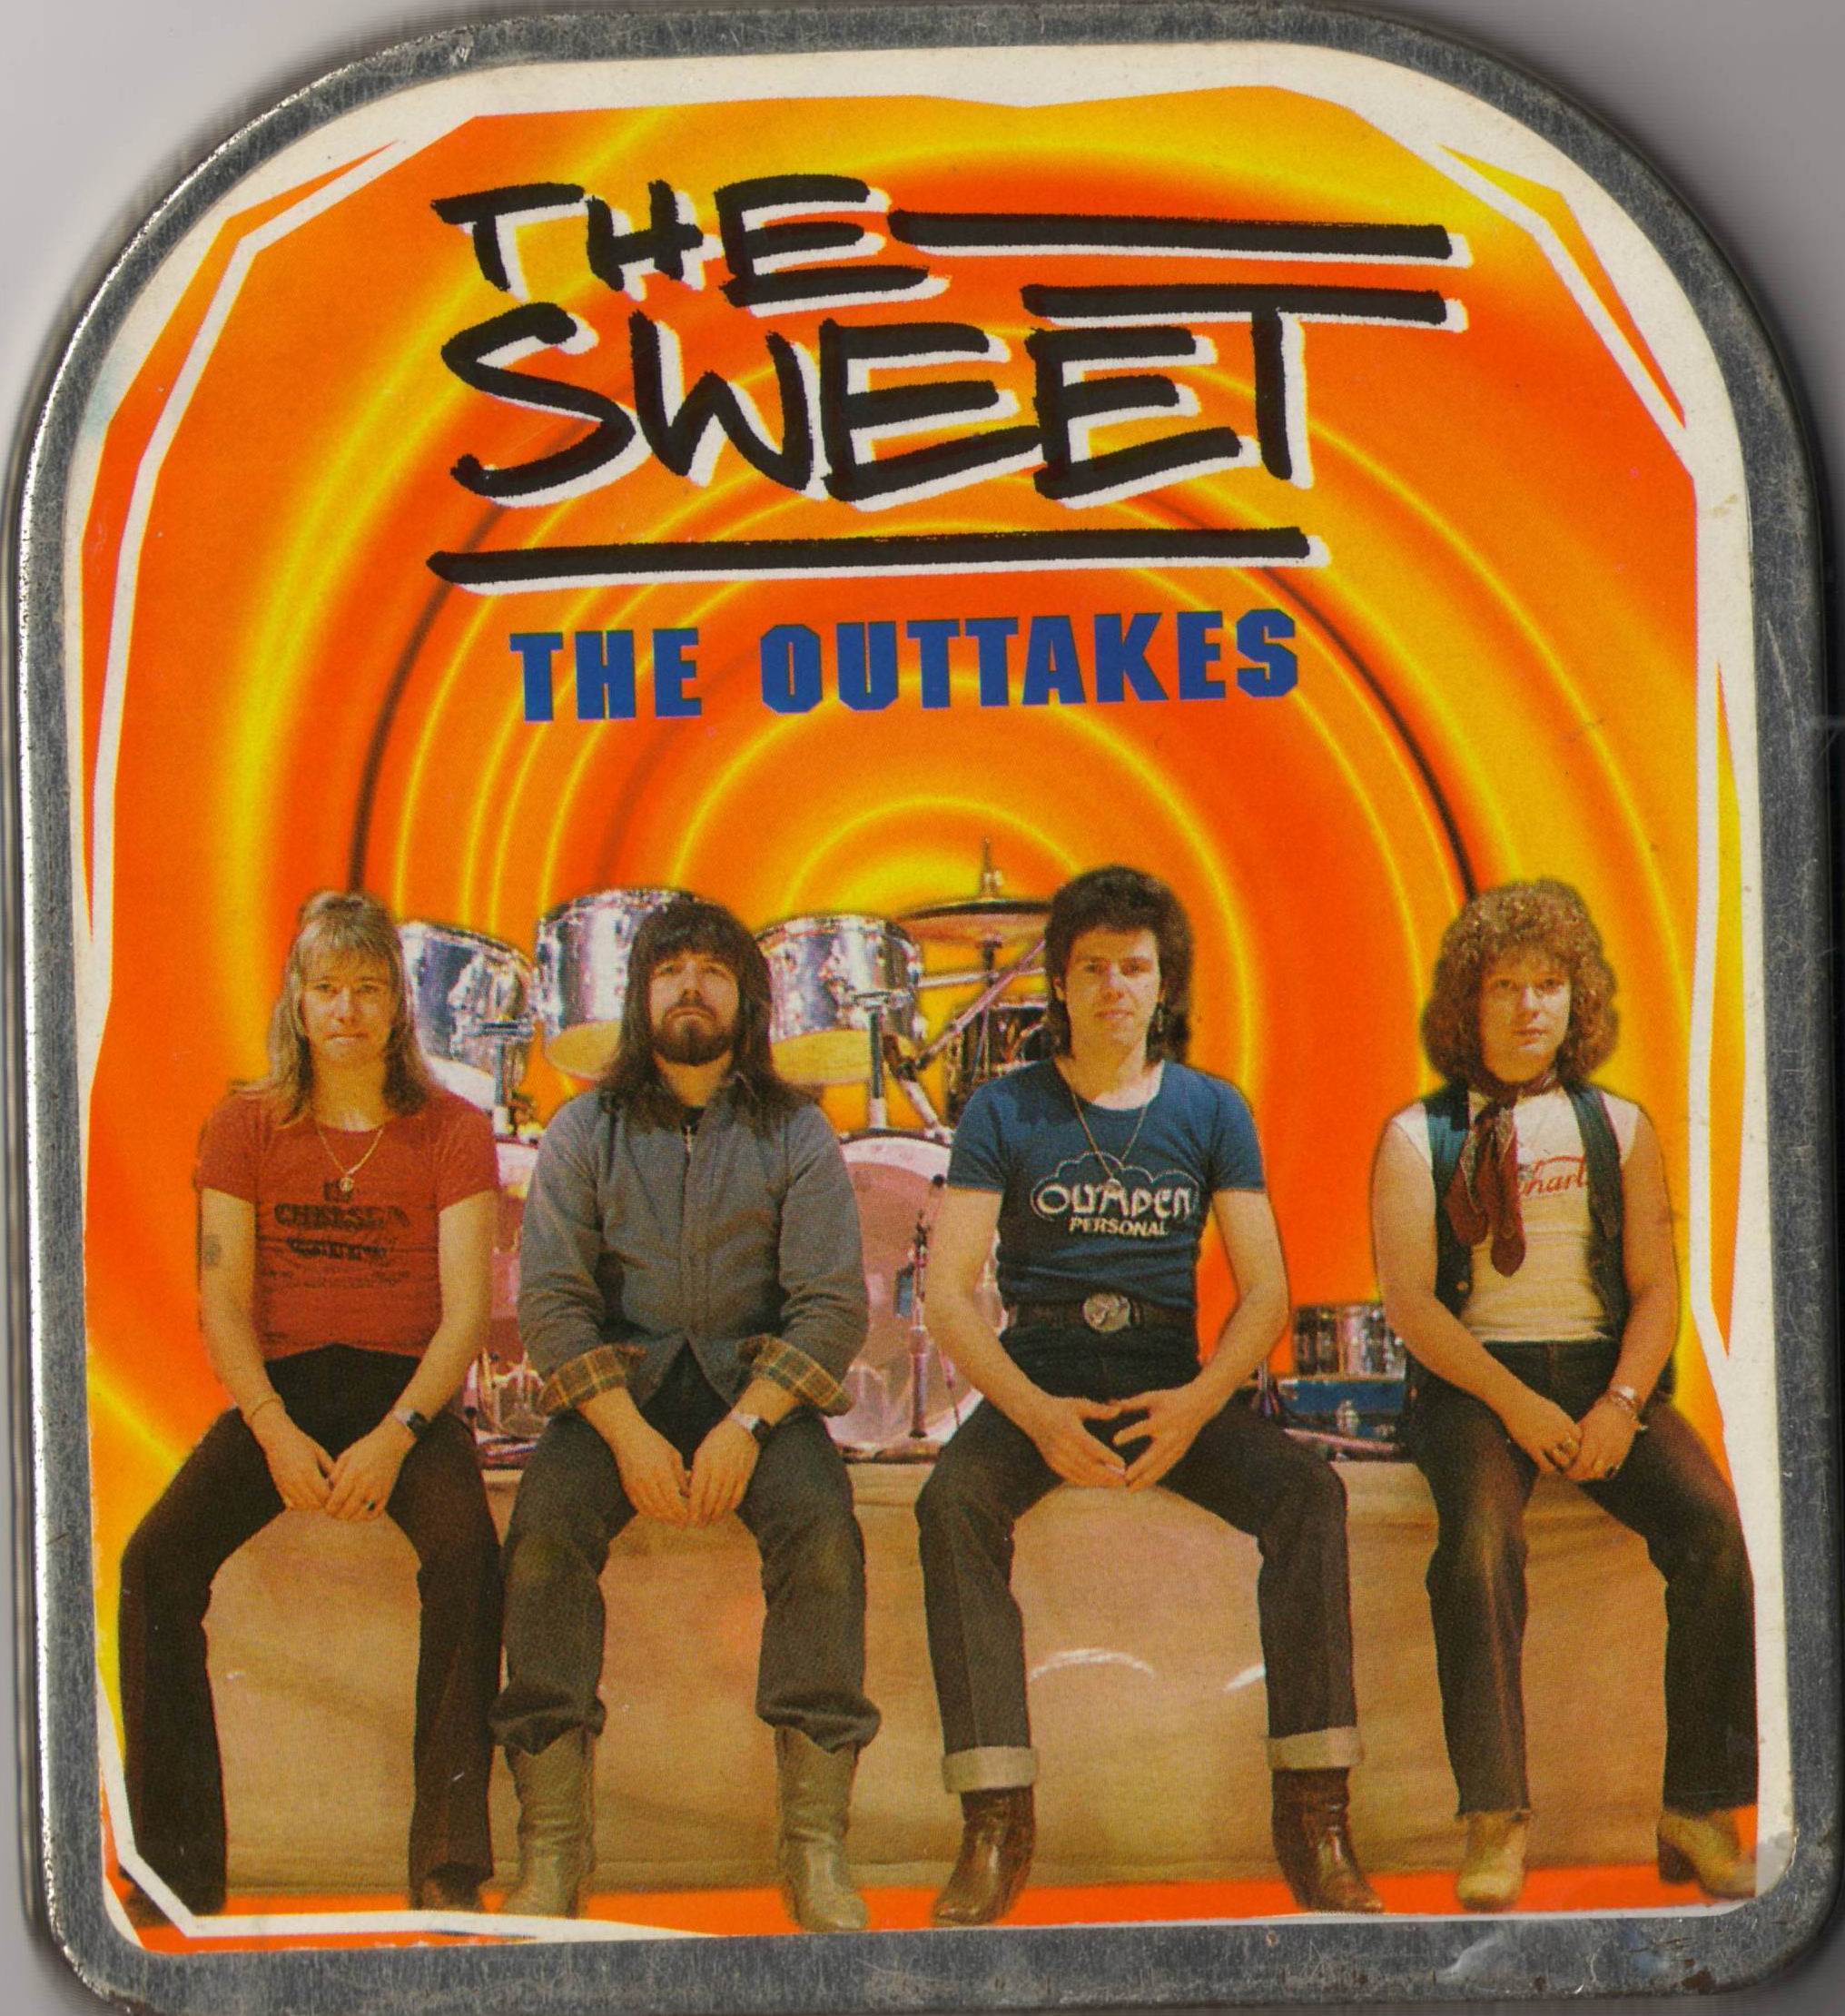 Sweet1970-1977Outtakes (4).jpg